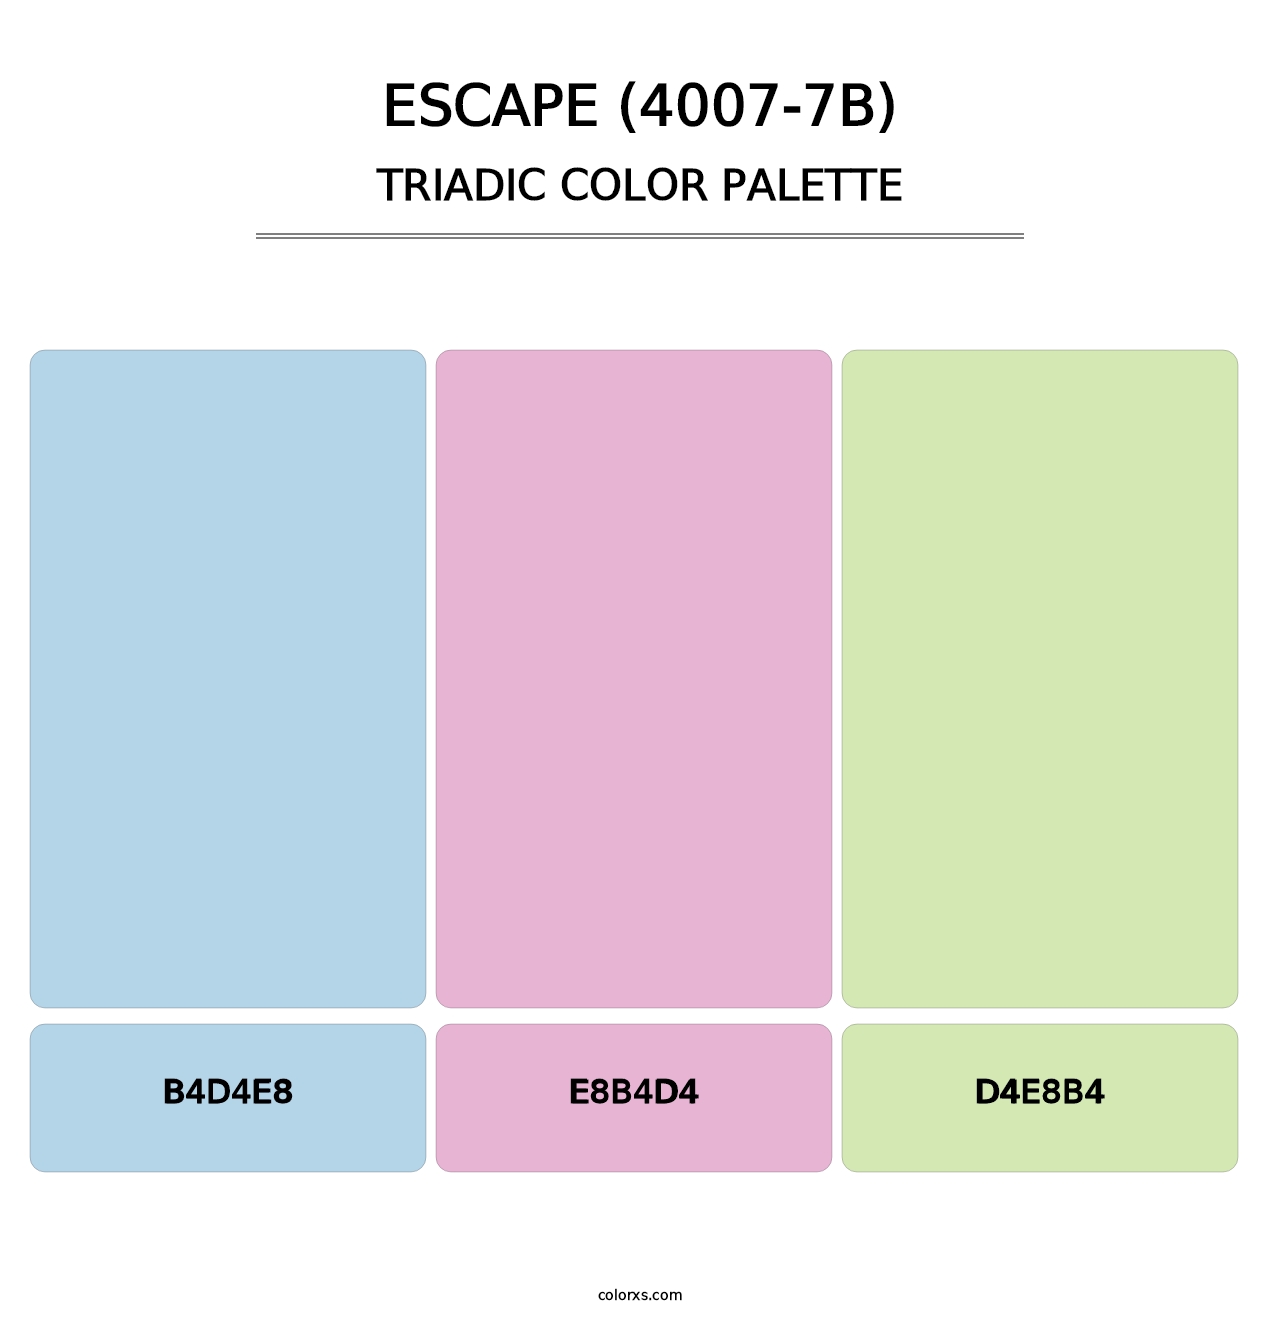 Escape (4007-7B) - Triadic Color Palette